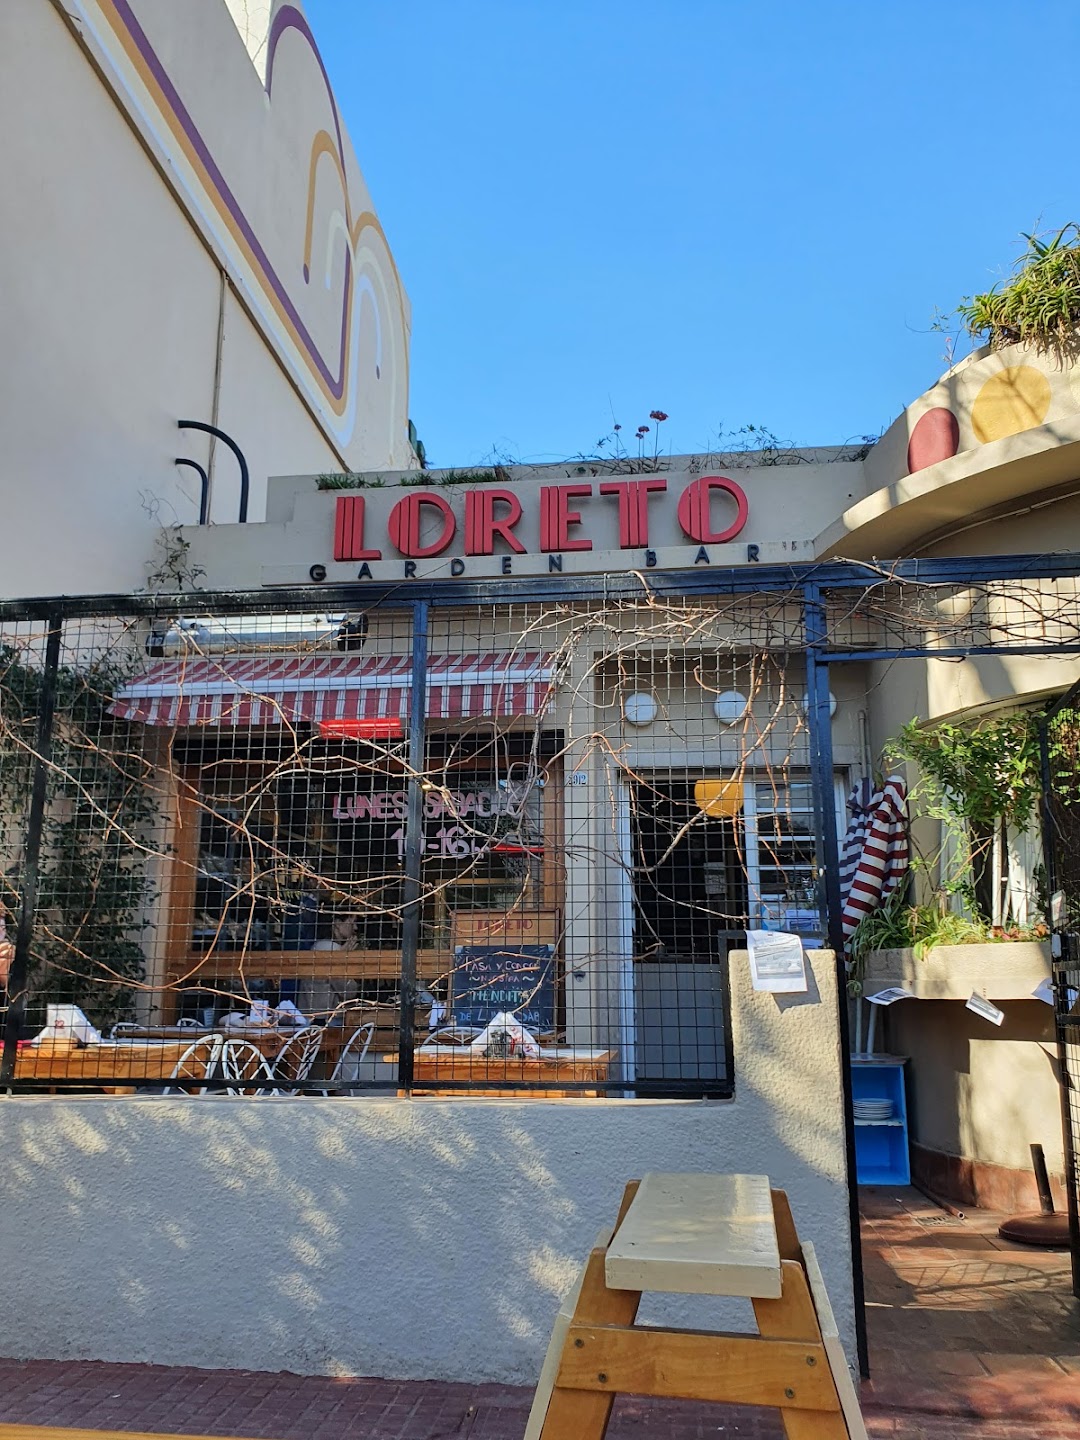 Loreto Garden Bar